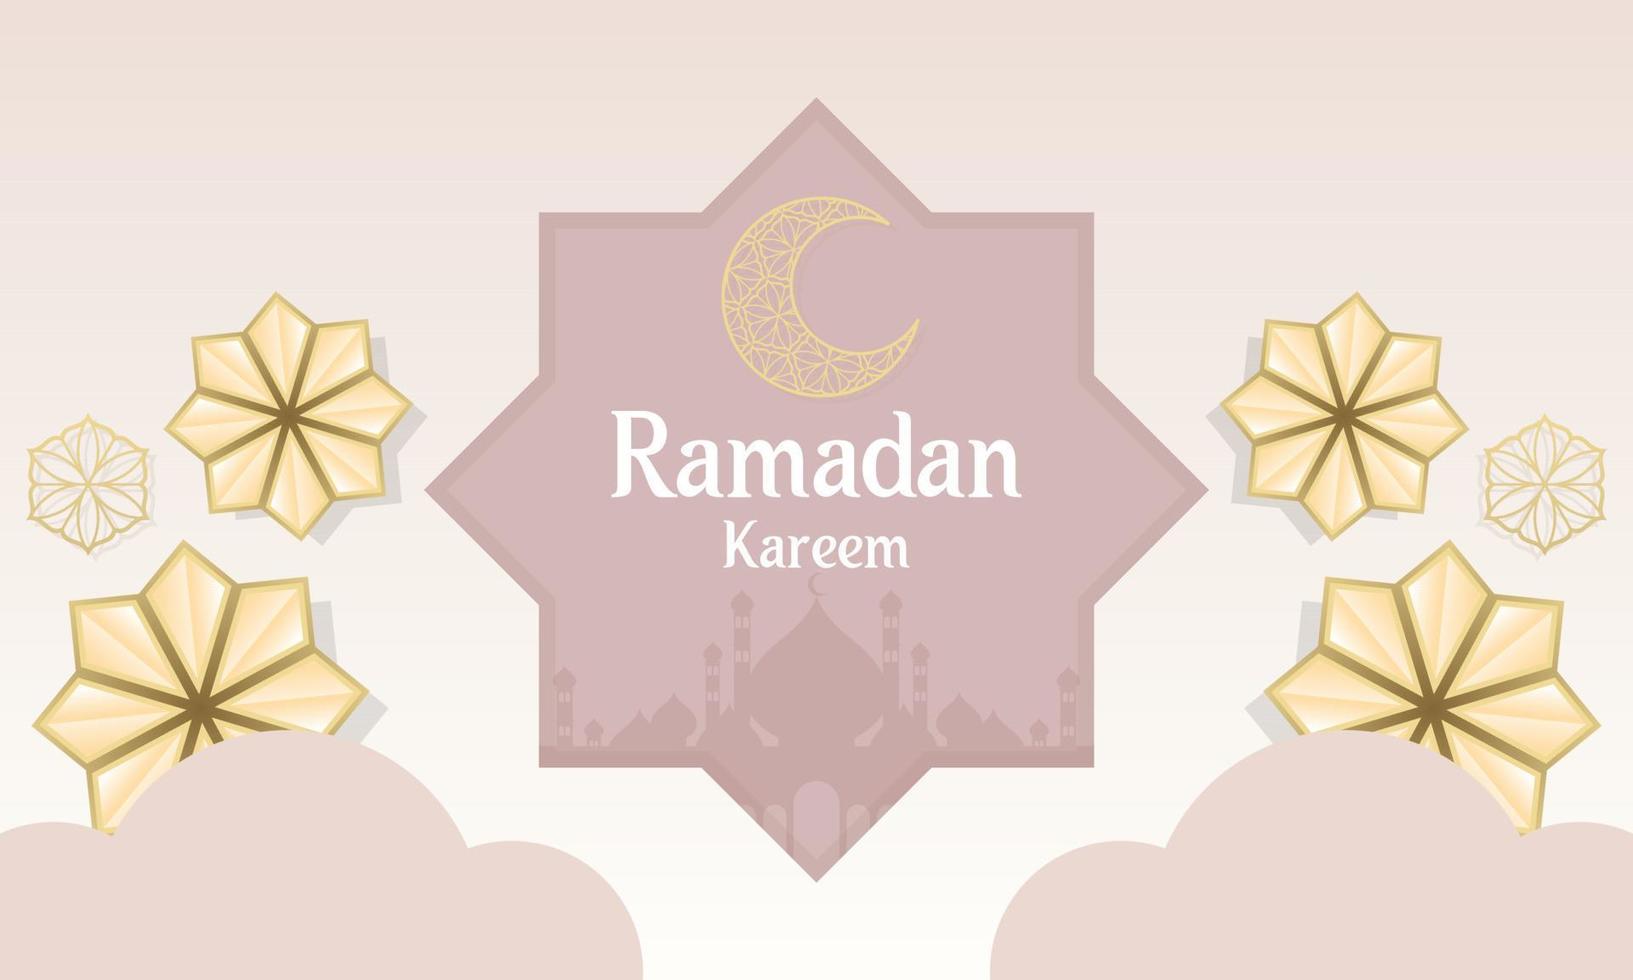 Ramadan kareem de islamique Festival conception avec islamique décorations vecteur